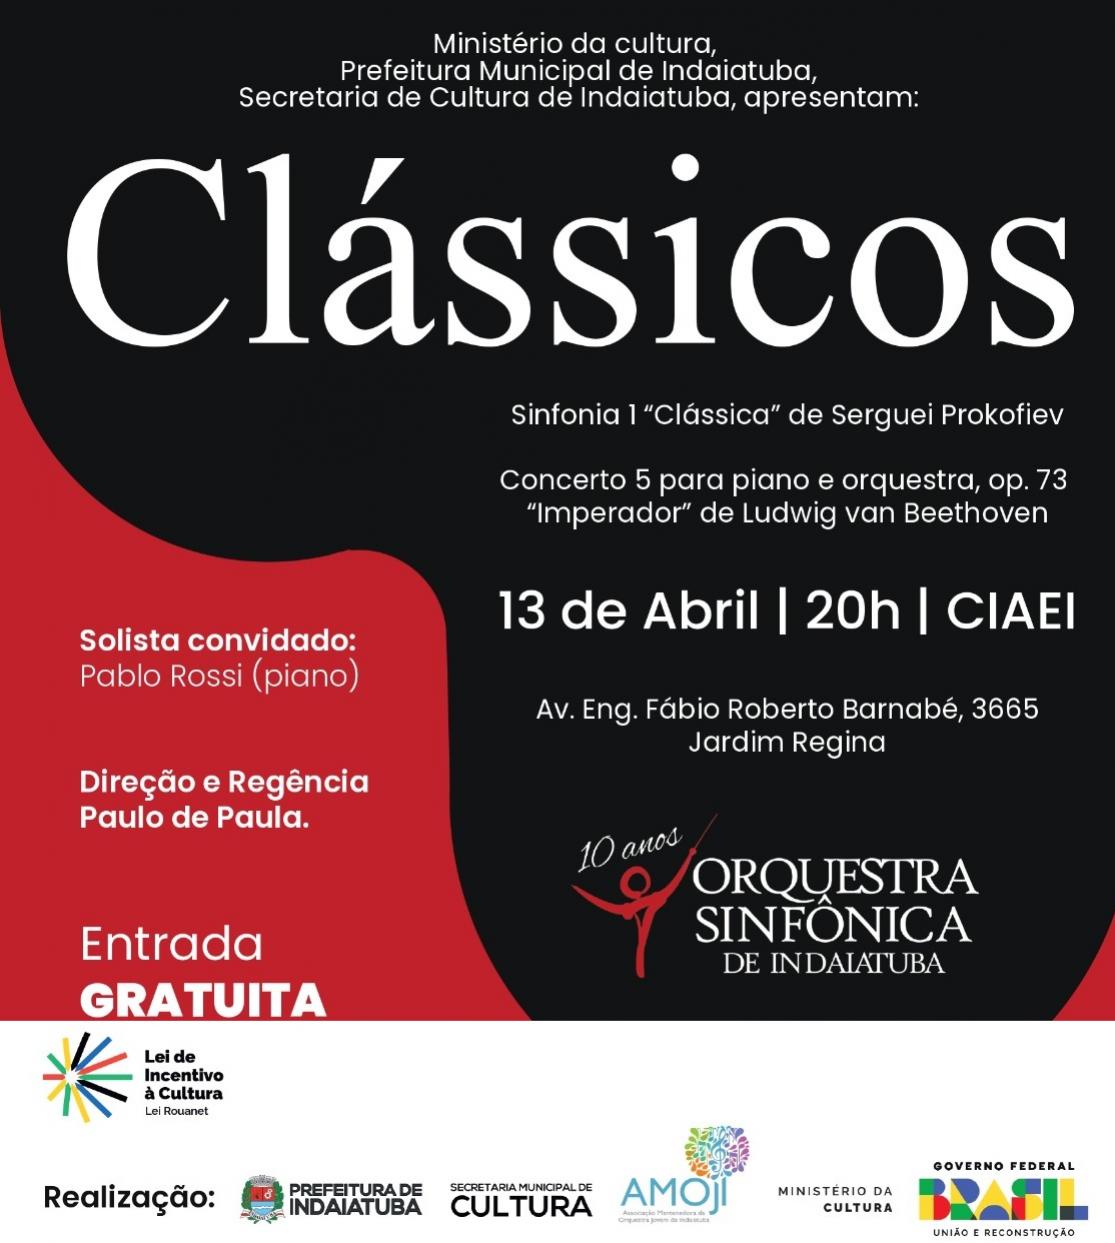 Orquestra Sinfônica de Indaiatuba apresenta Concerto Clássicos" em 13 de Abril"